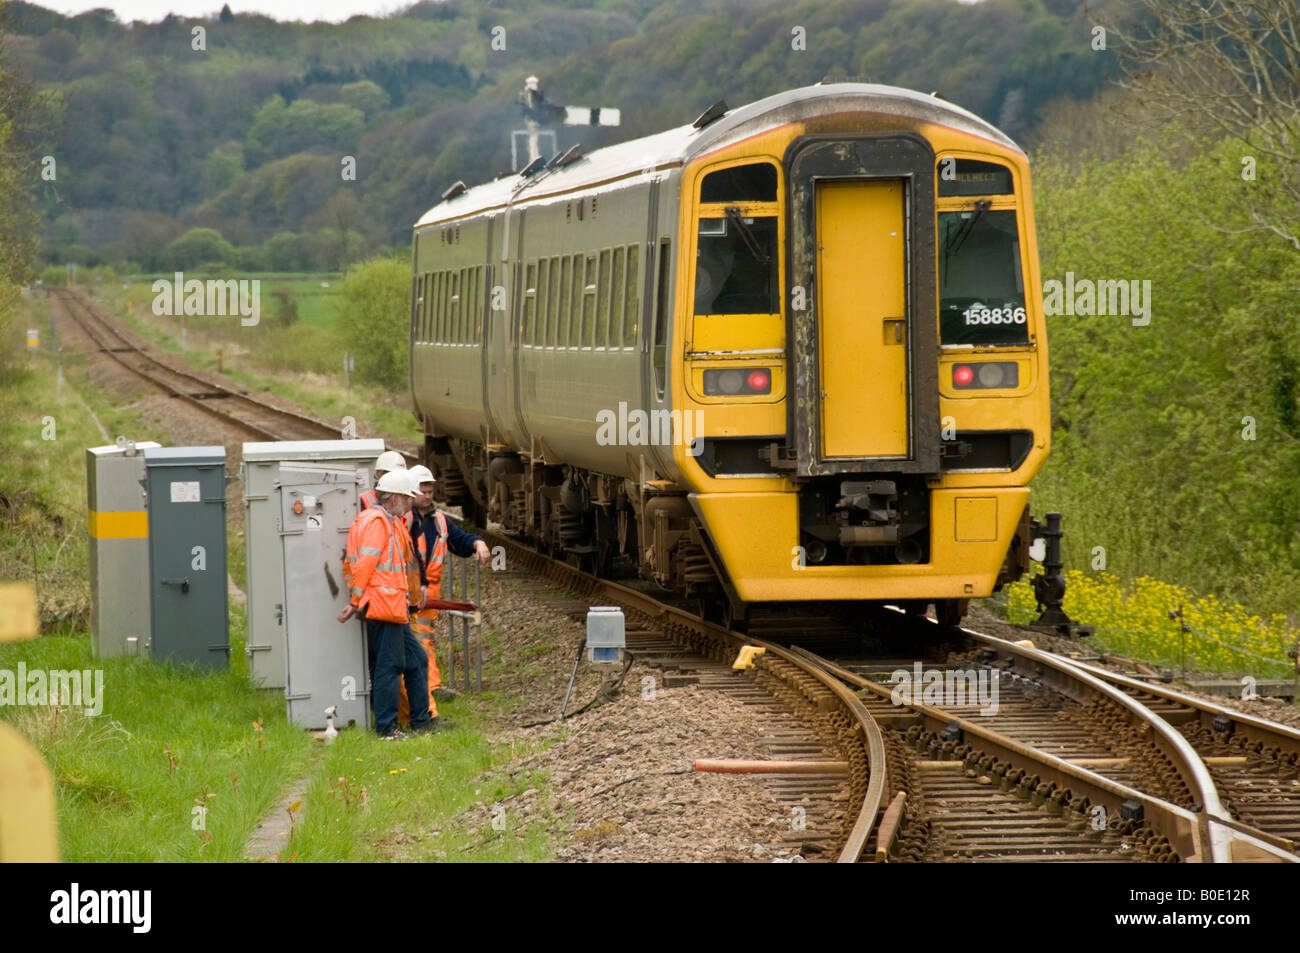 Pays de Galles arriva DMU train sur la voie unique de la ligne de côte Cambrian passant d'un groupe d'ingénieurs qui travaillent sur les points Banque D'Images